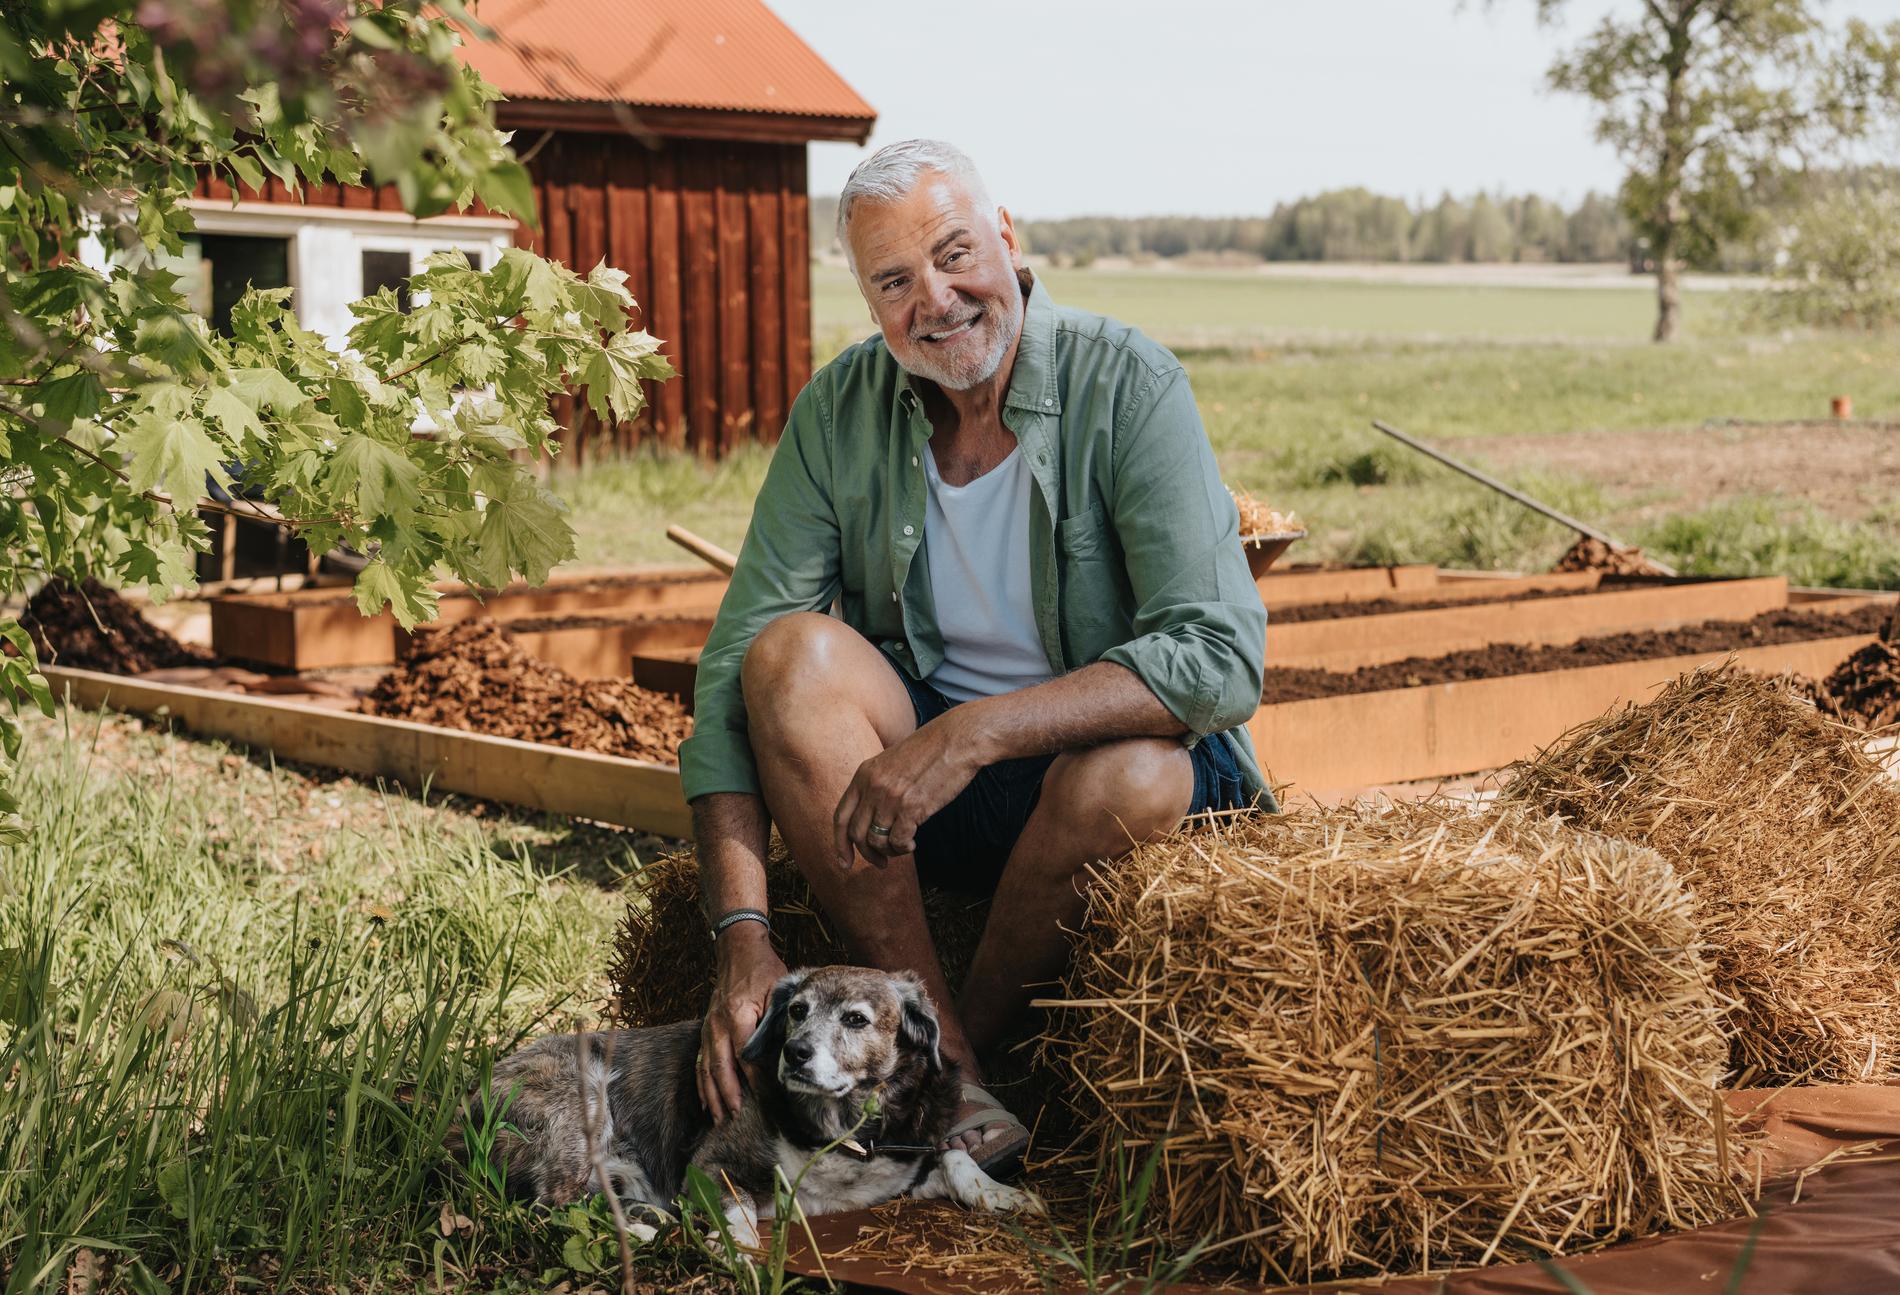 Ernst Kirchsteiger sitter bland höbalar, gräs och jord och klappar en hund